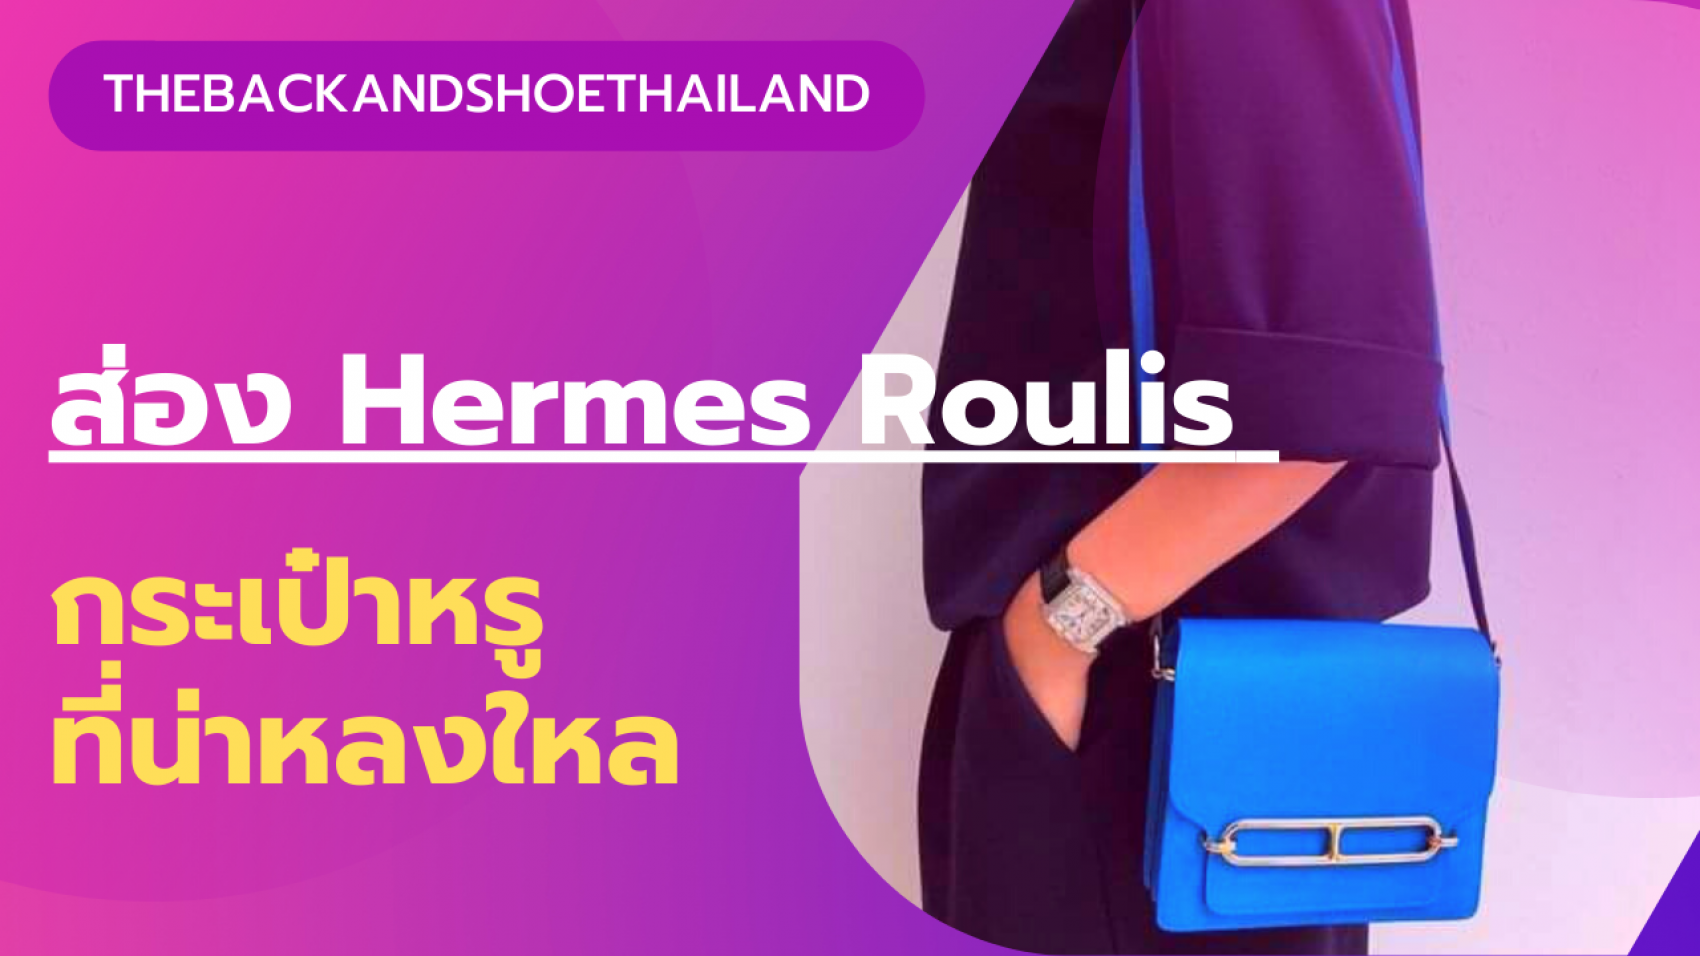 ส่อง Hermès Roulis กระเป๋าแบรนด์เนมที่สาวๆ หลายคนอยากครอบครอง